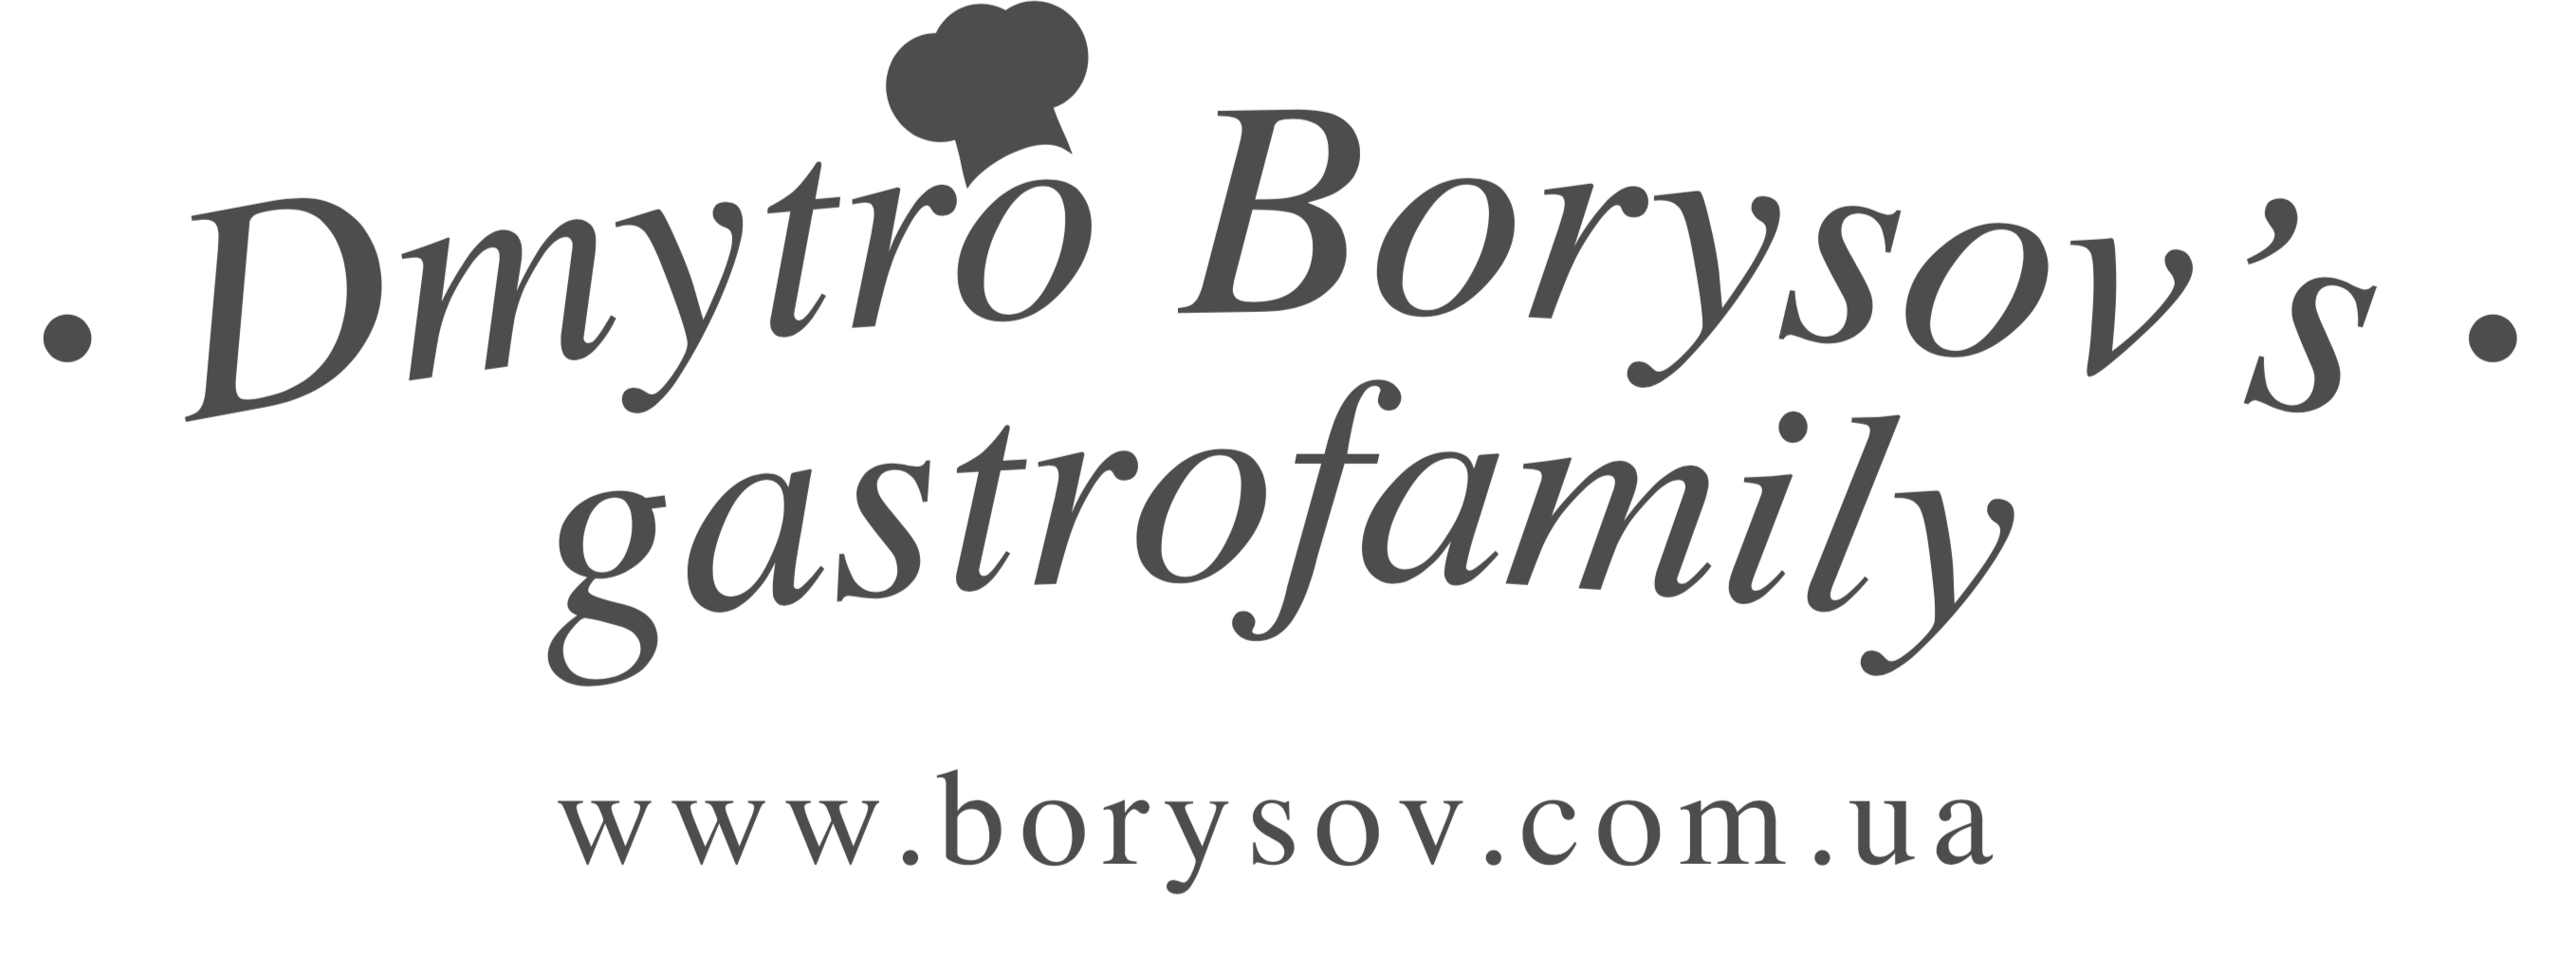 Dmytro Borysov's gastrofamily